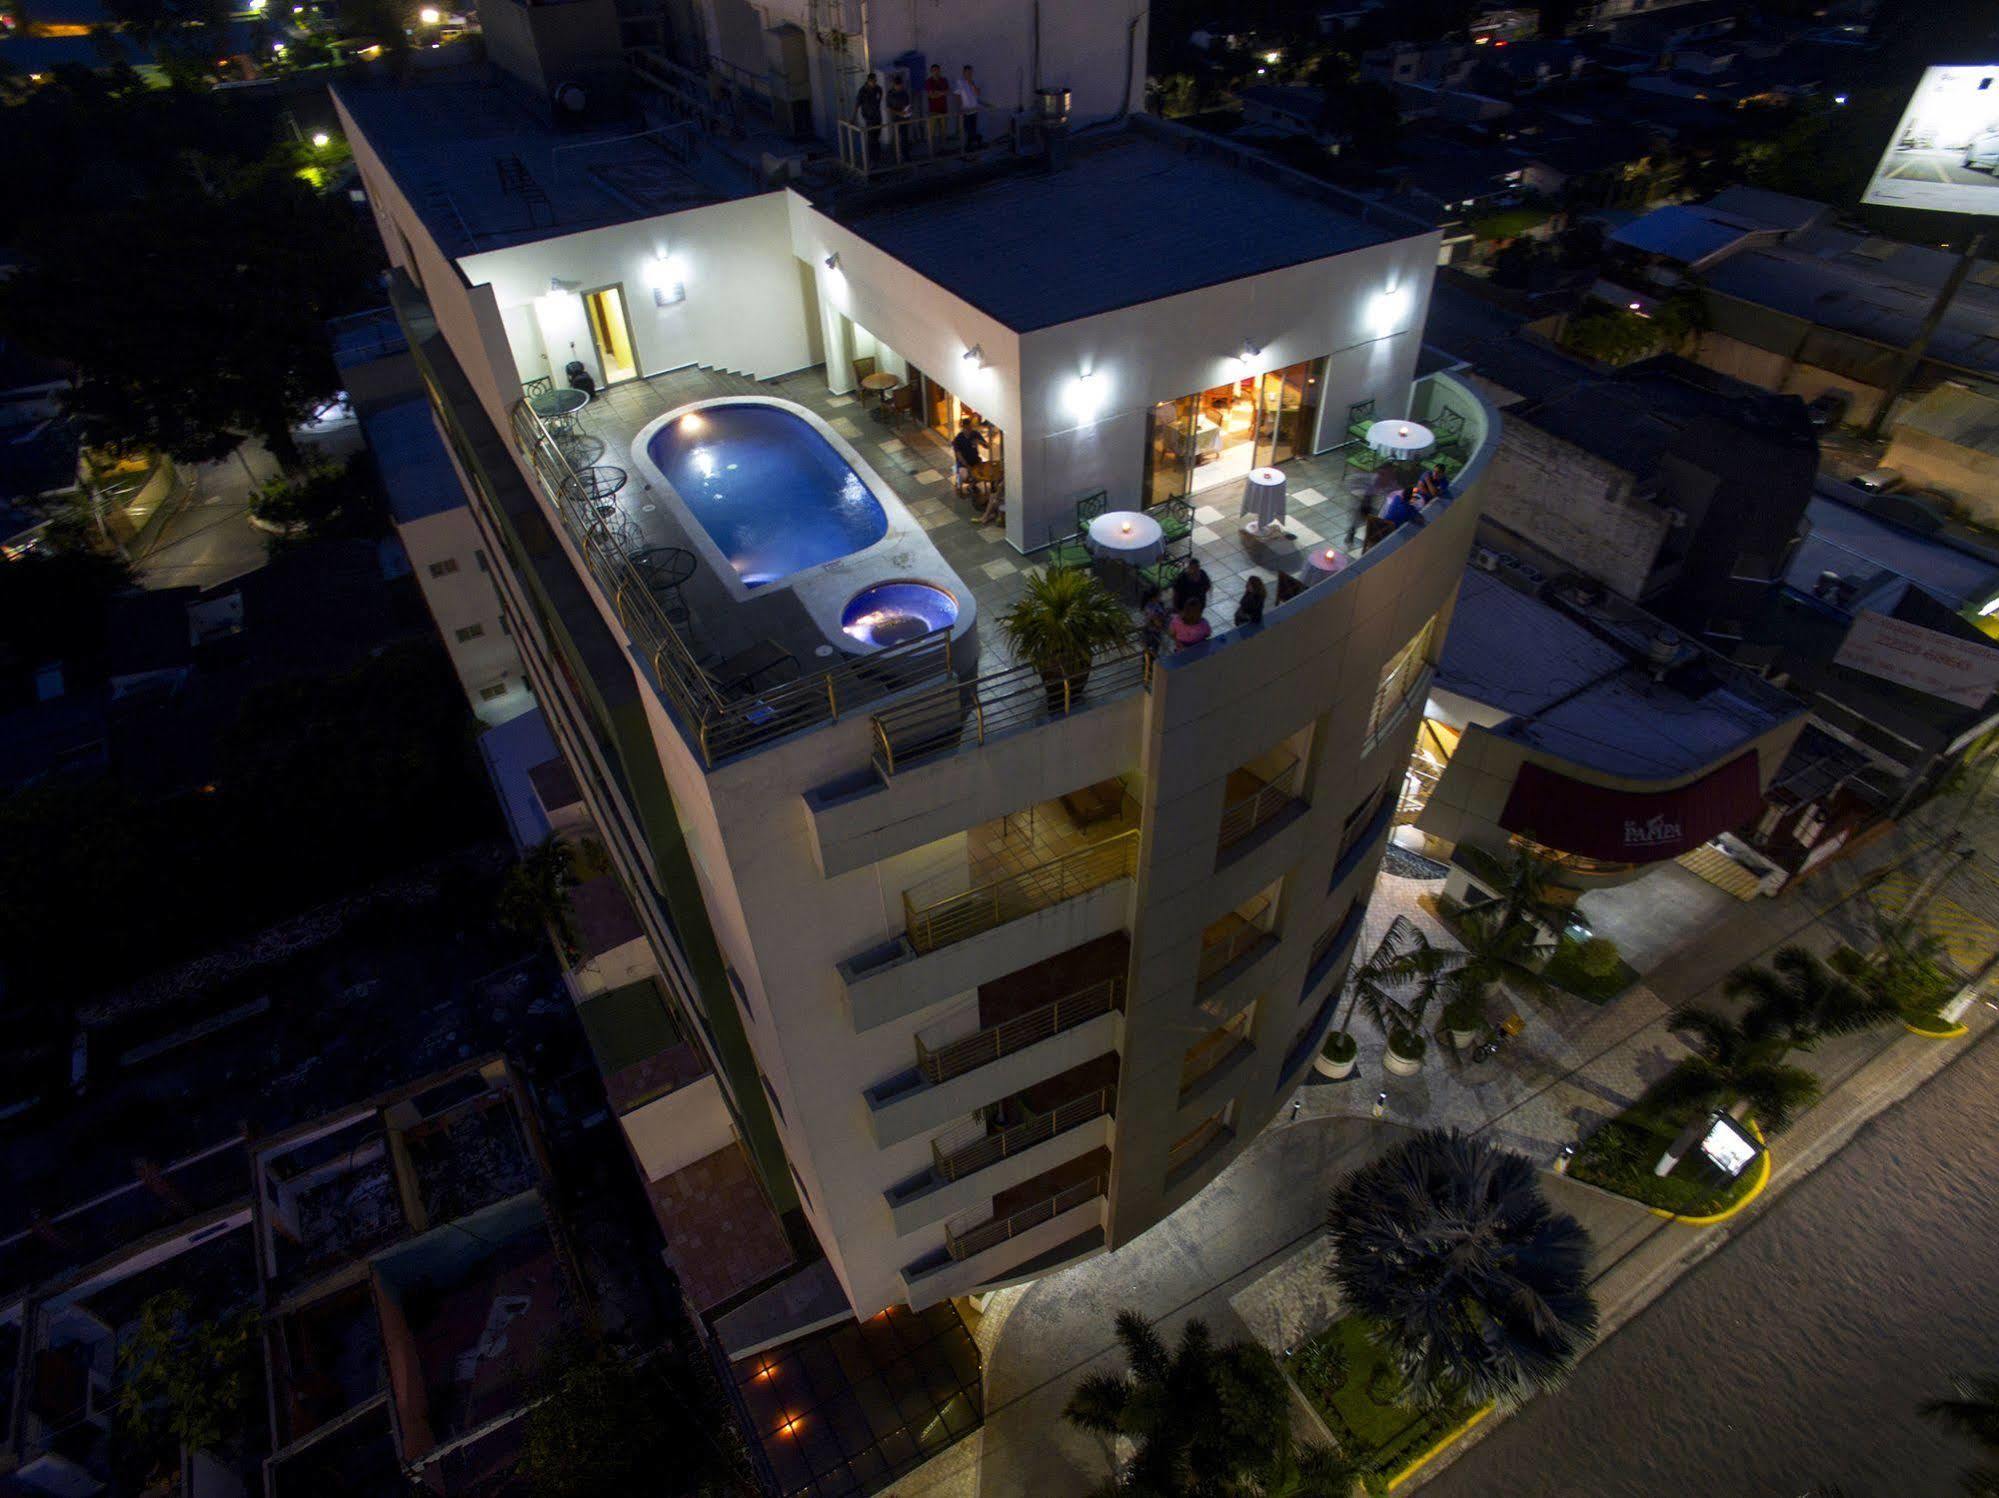 Suites Las Palmas, Hotel & Apartments. 산살바도르 외부 사진